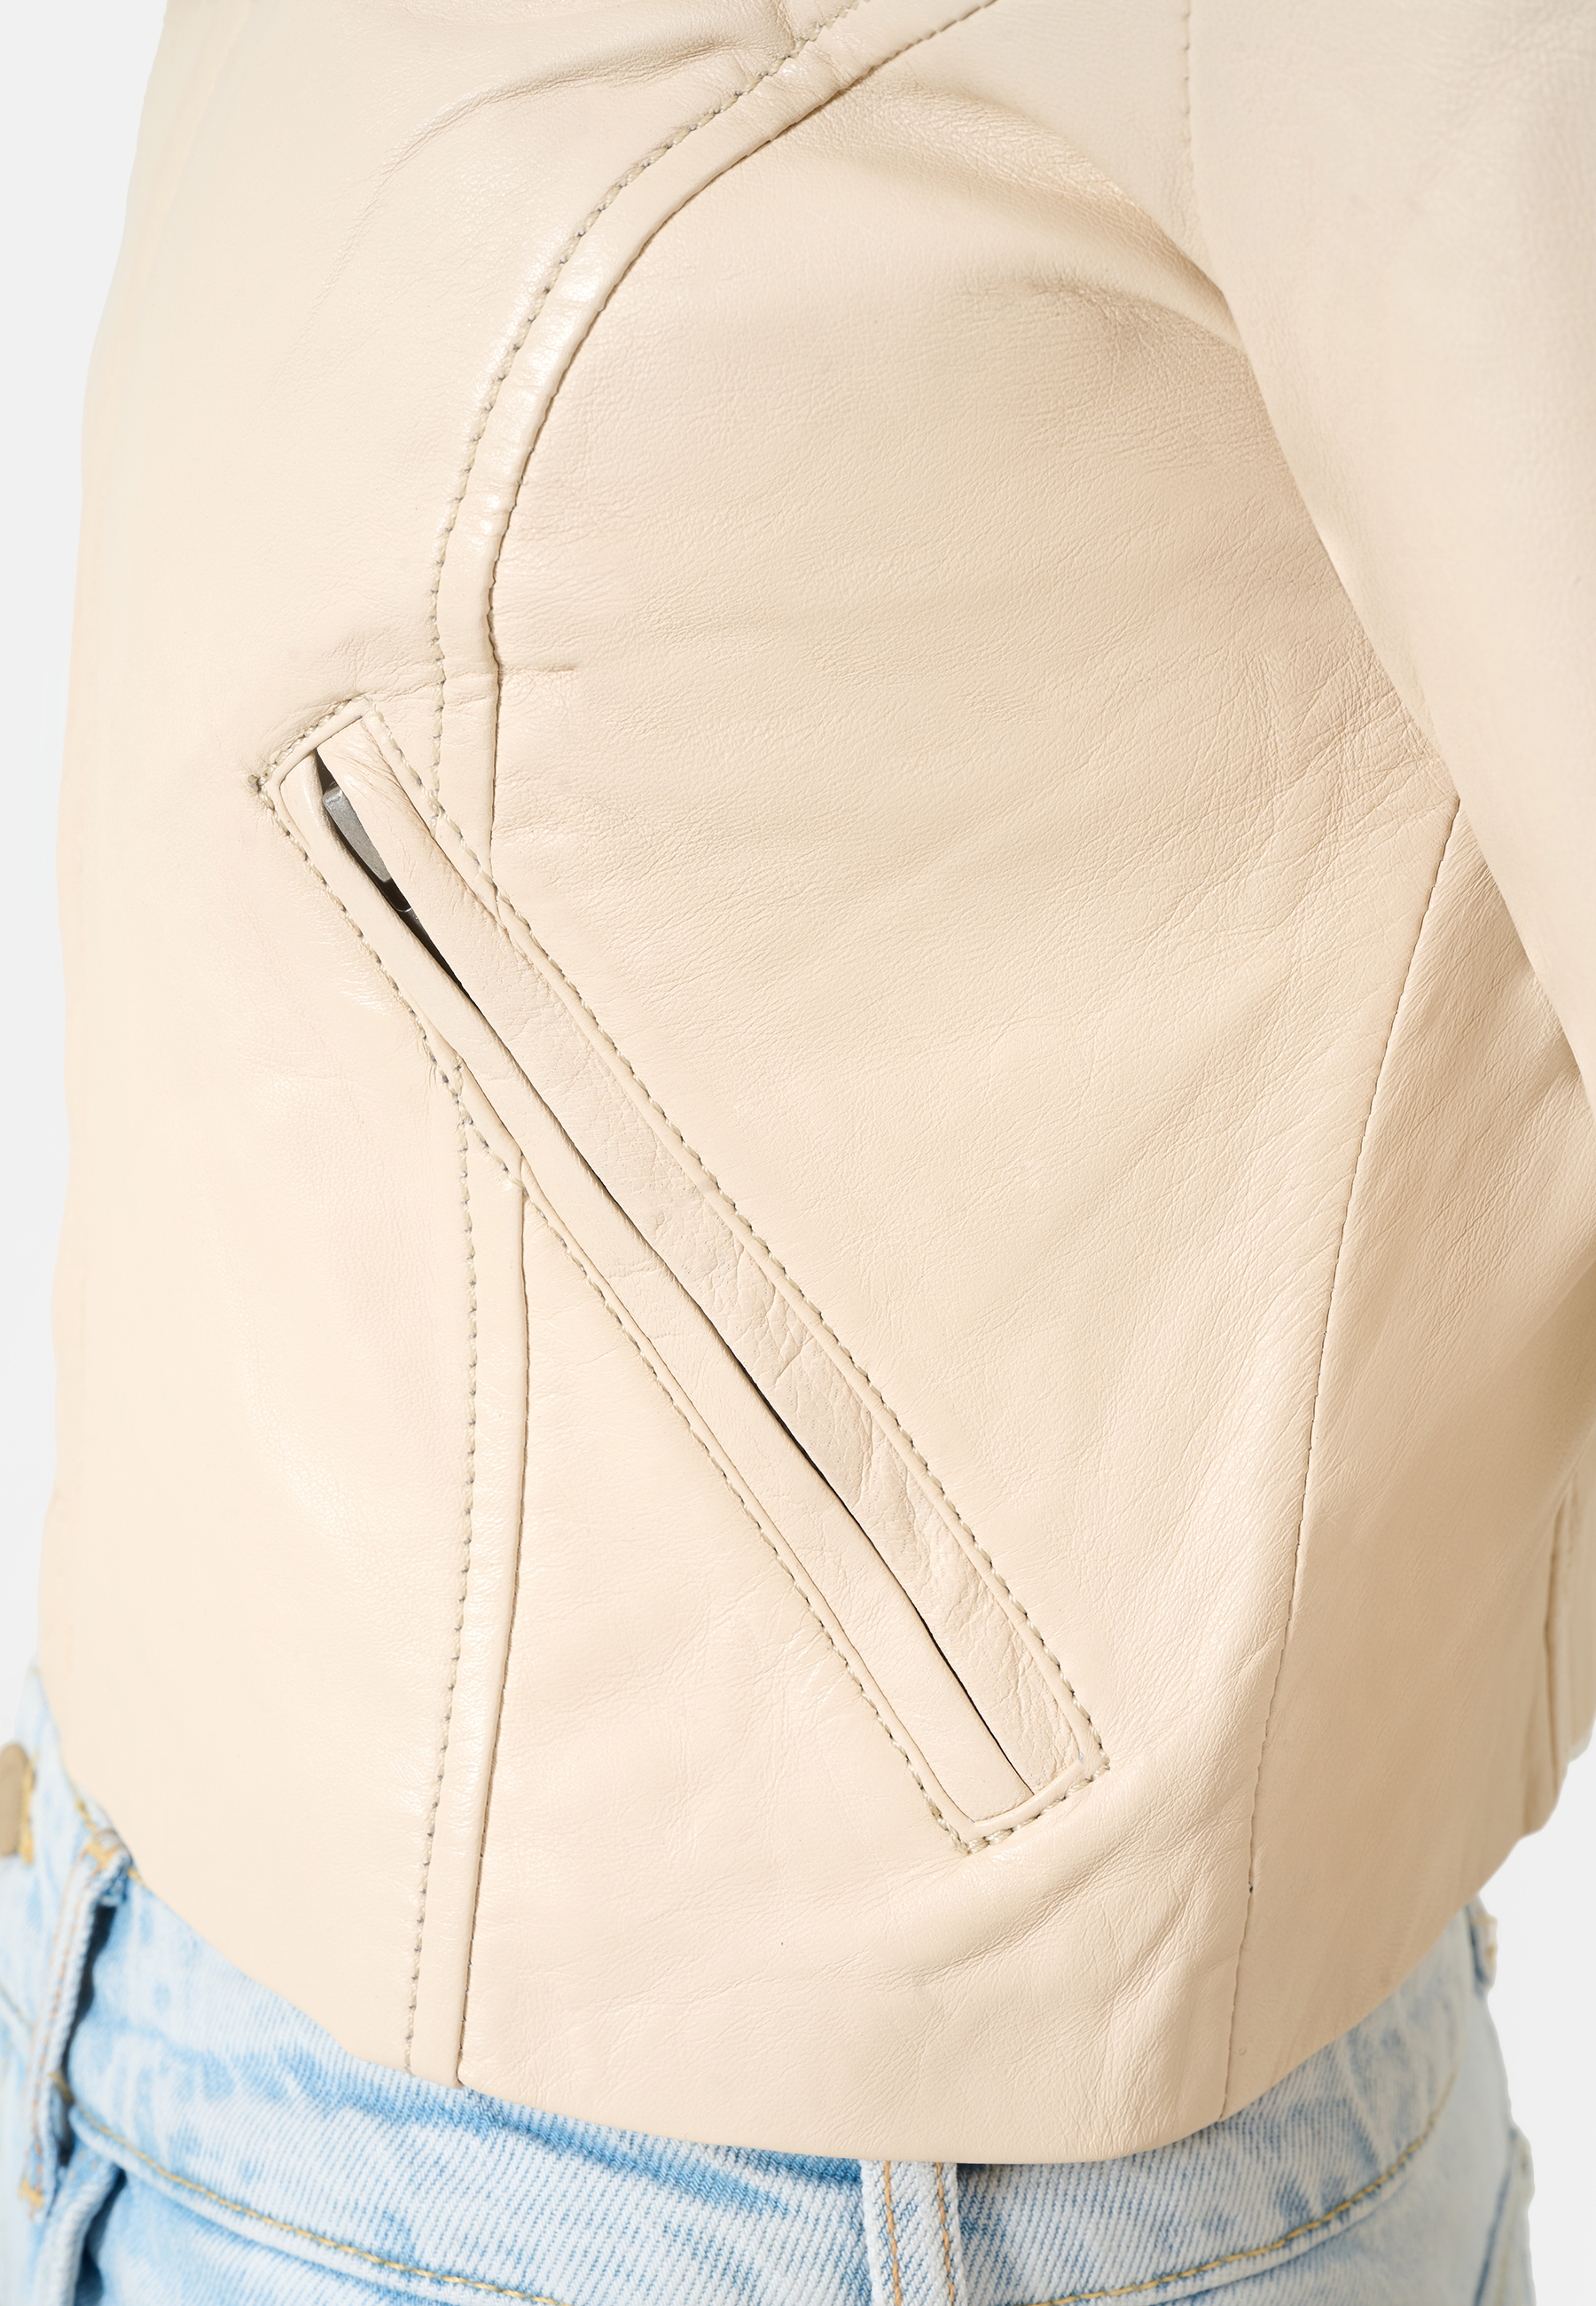 Damen Lederjacke Mia in Tofu von Ricano, Detailansicht verschlossene Seitentasche mit verdecktem Reißverschluss